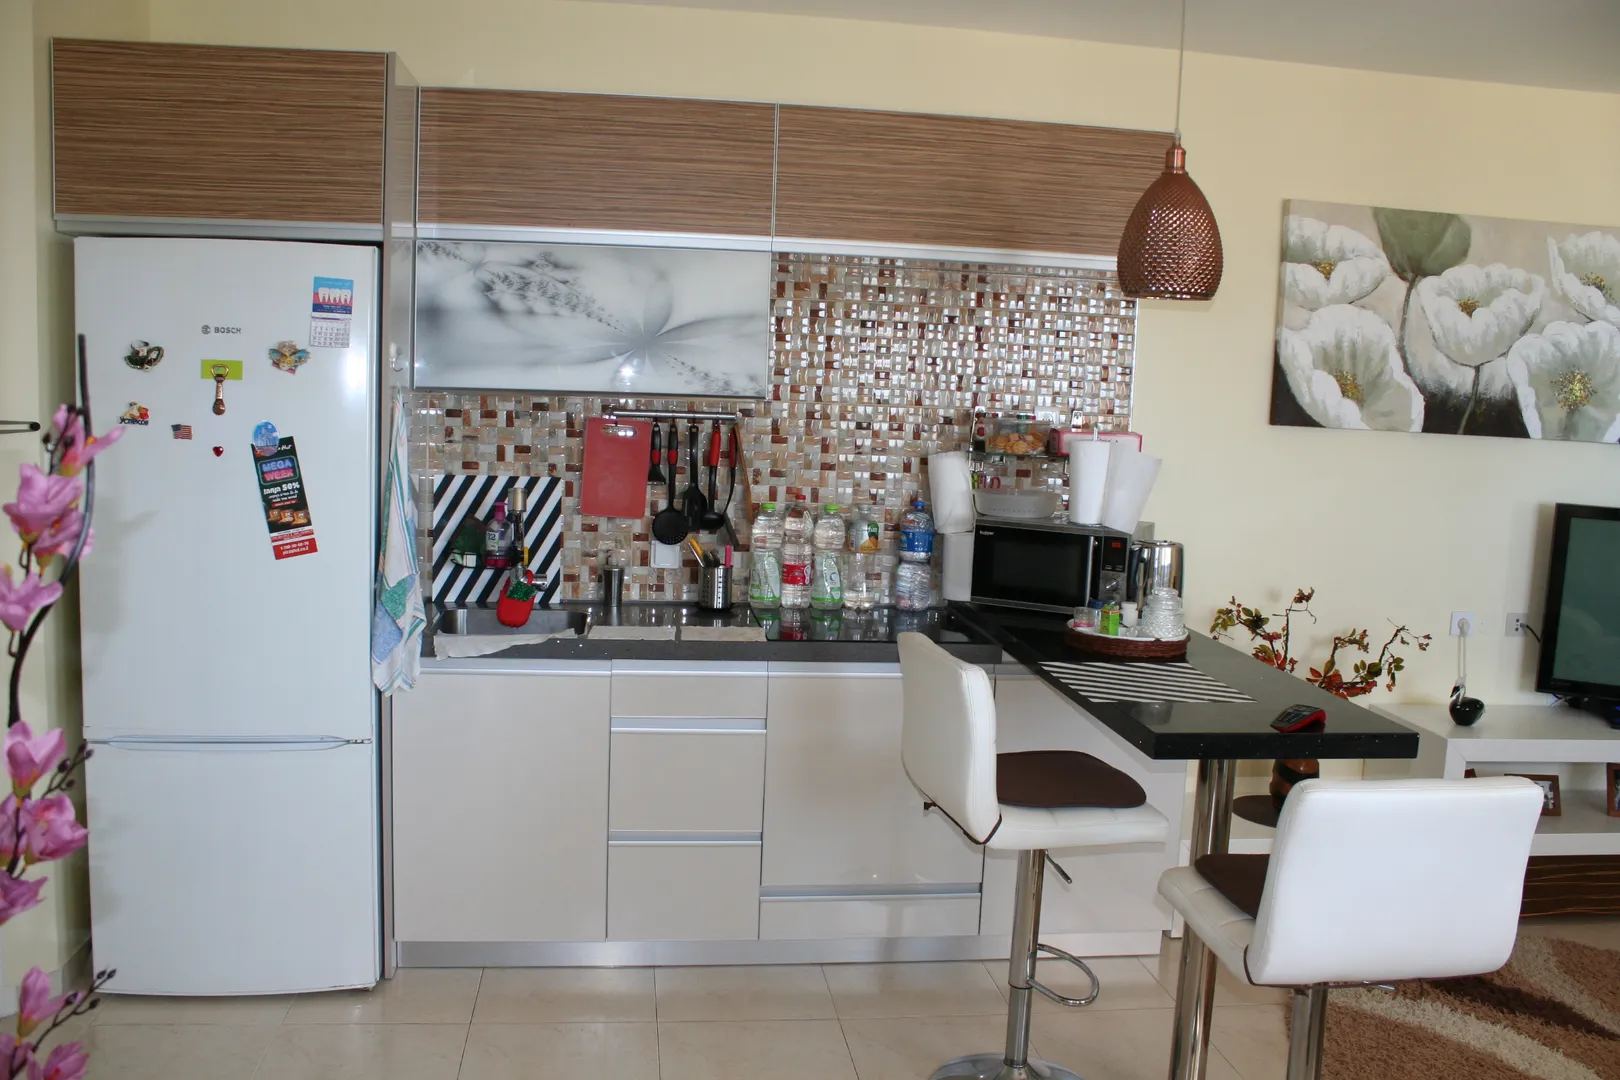 Кухня + салон с холодильником, электроплитой, микроволновкой, барной стойкой и 3-мя барными стульями